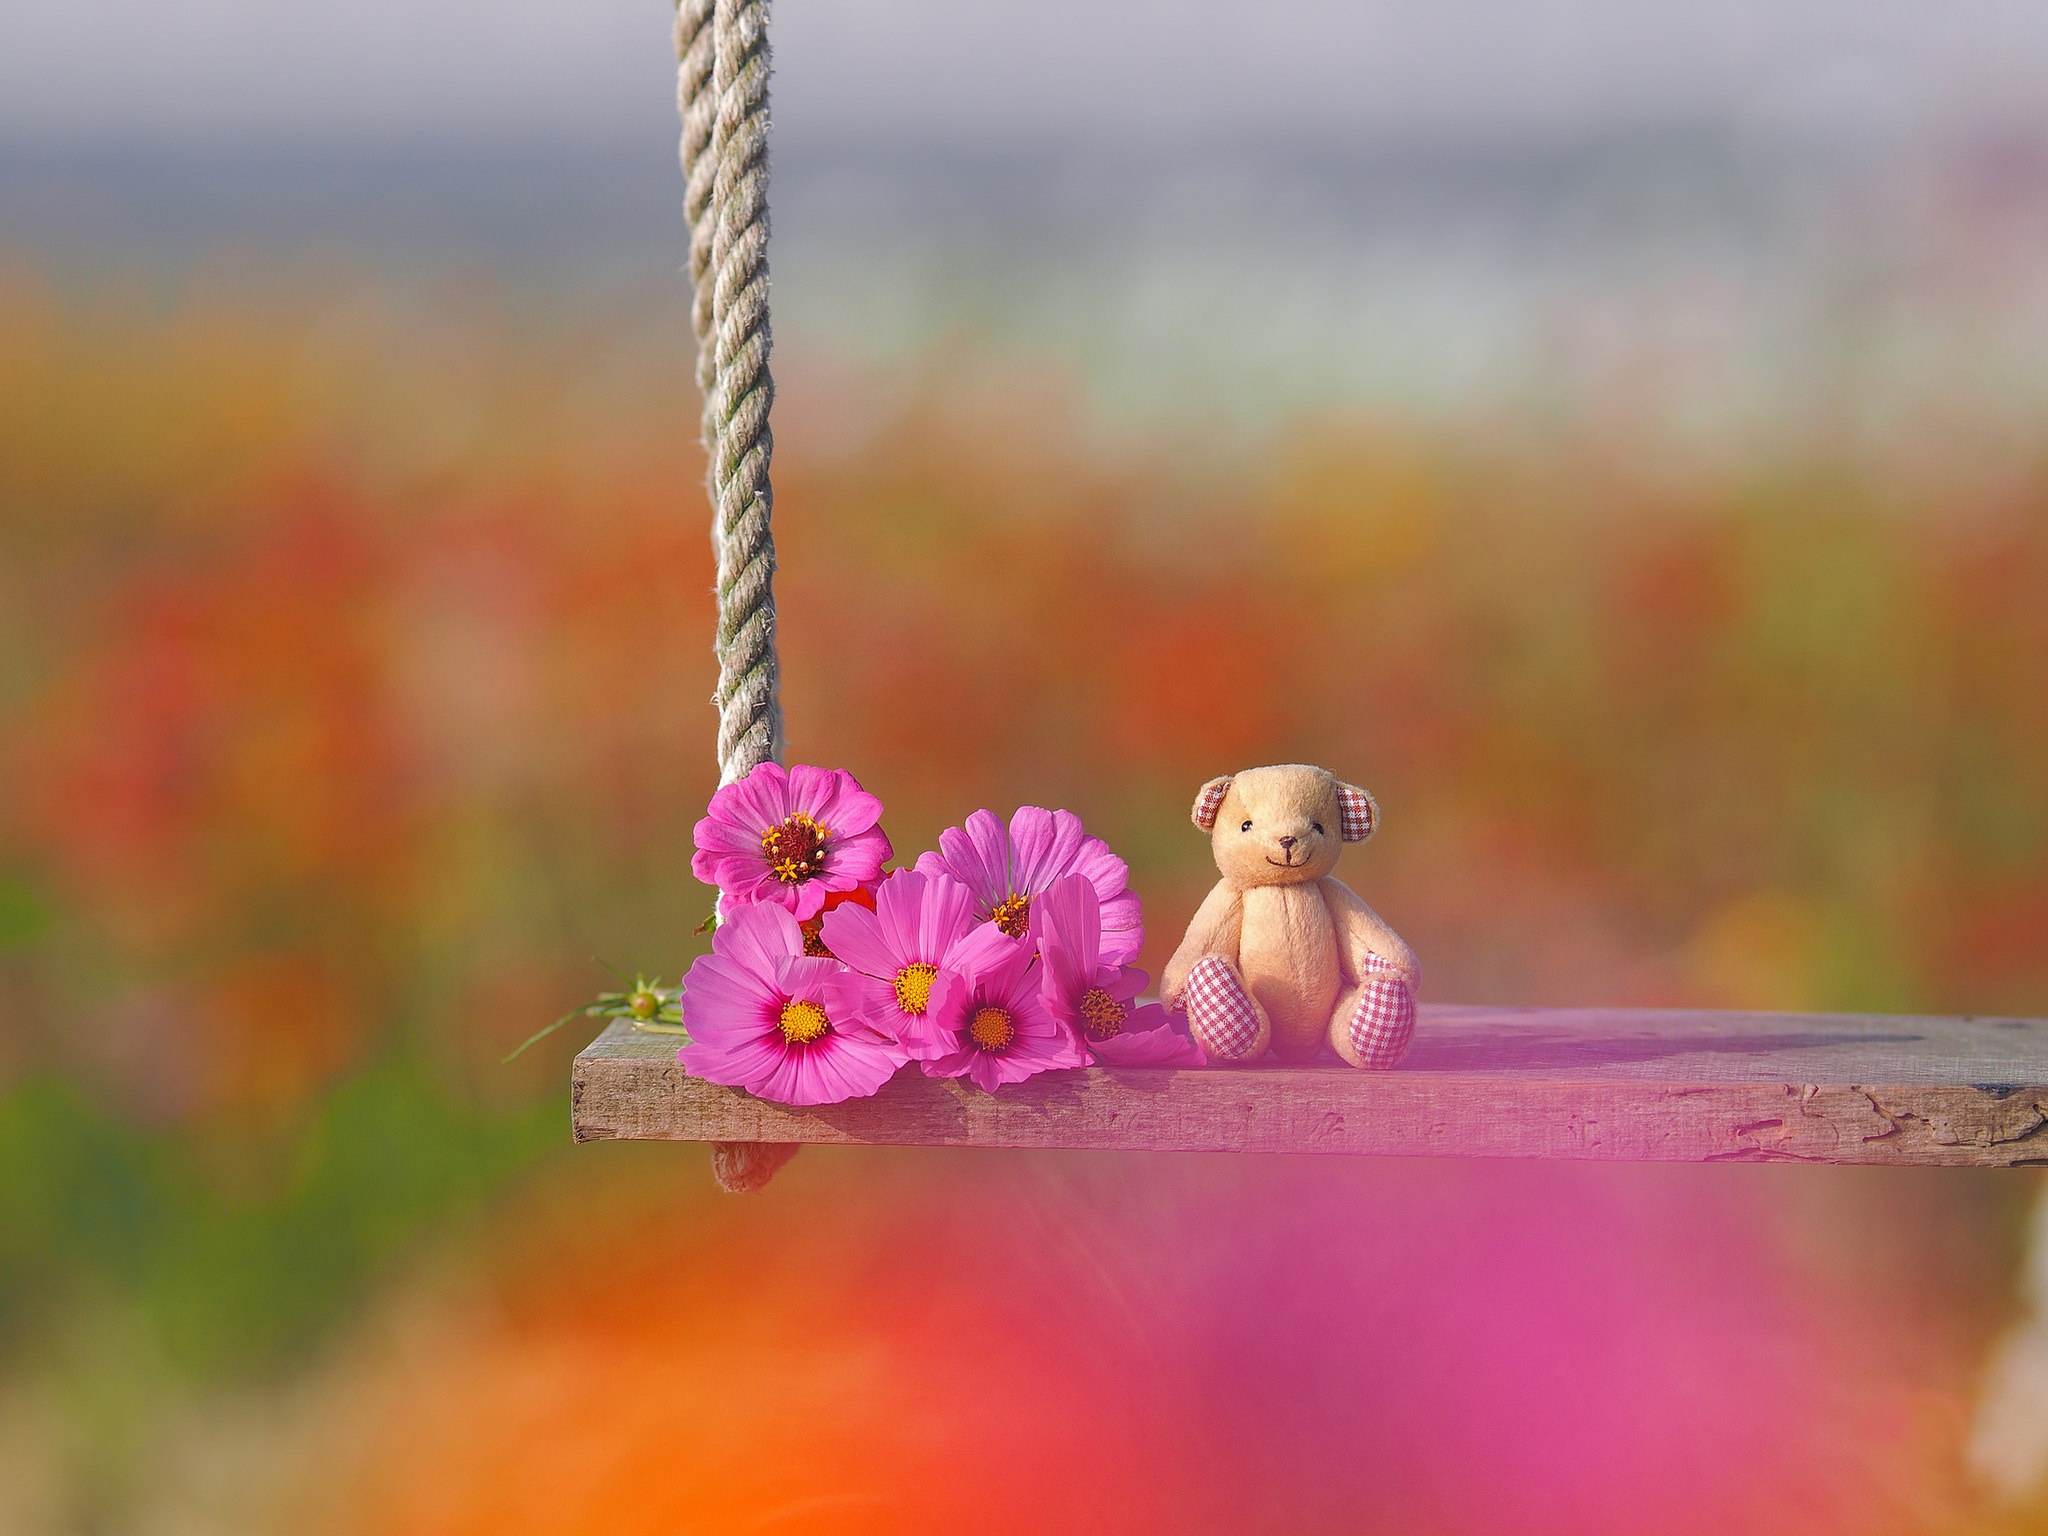 Flower Swing Toy Cosmos Teddy Bear 2048x1536